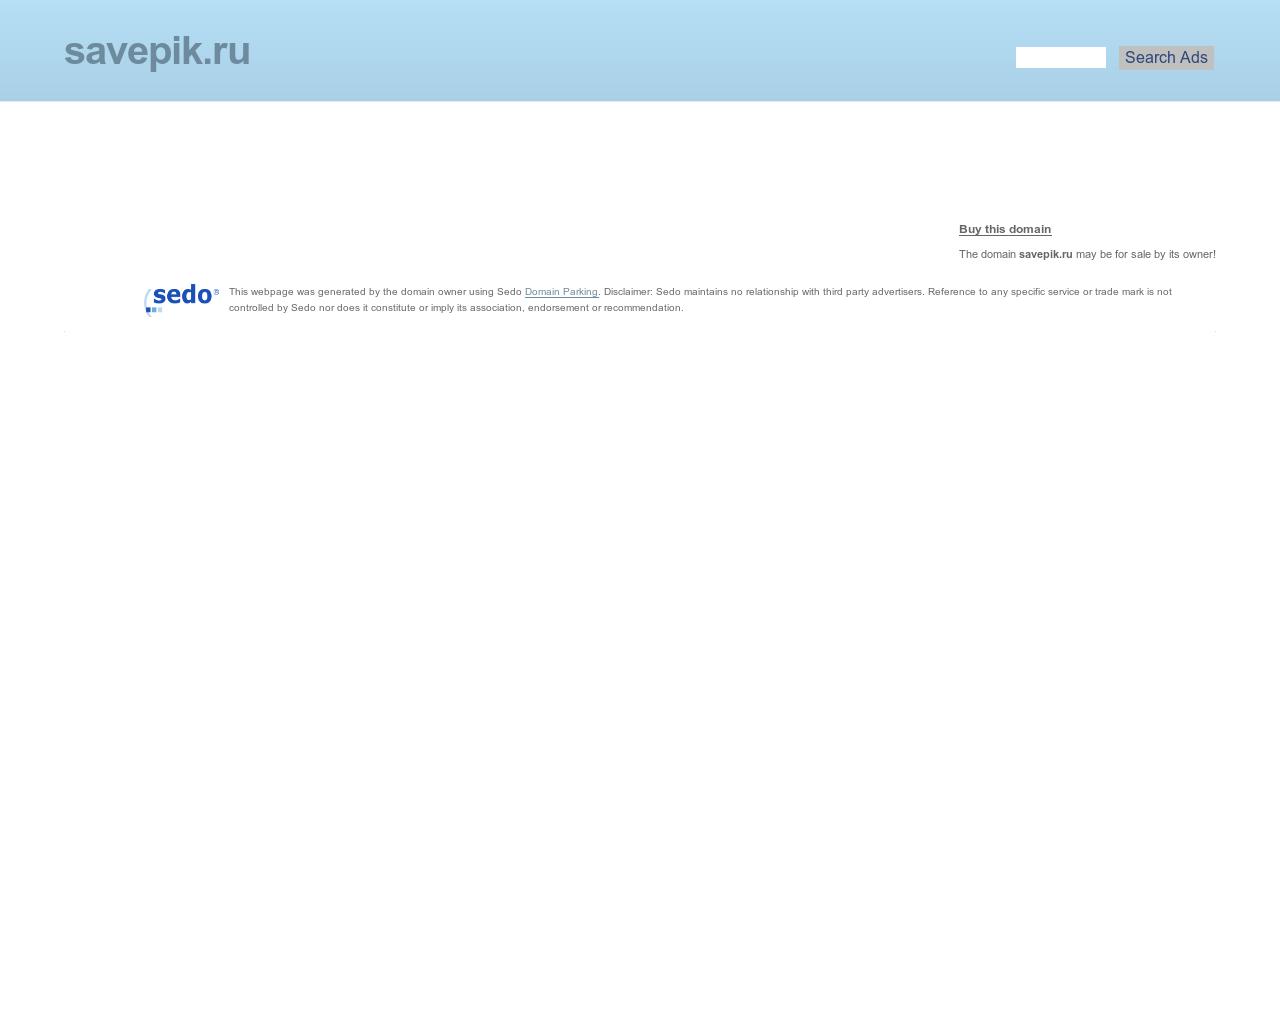 Изображение сайта savepik.ru в разрешении 1280x1024